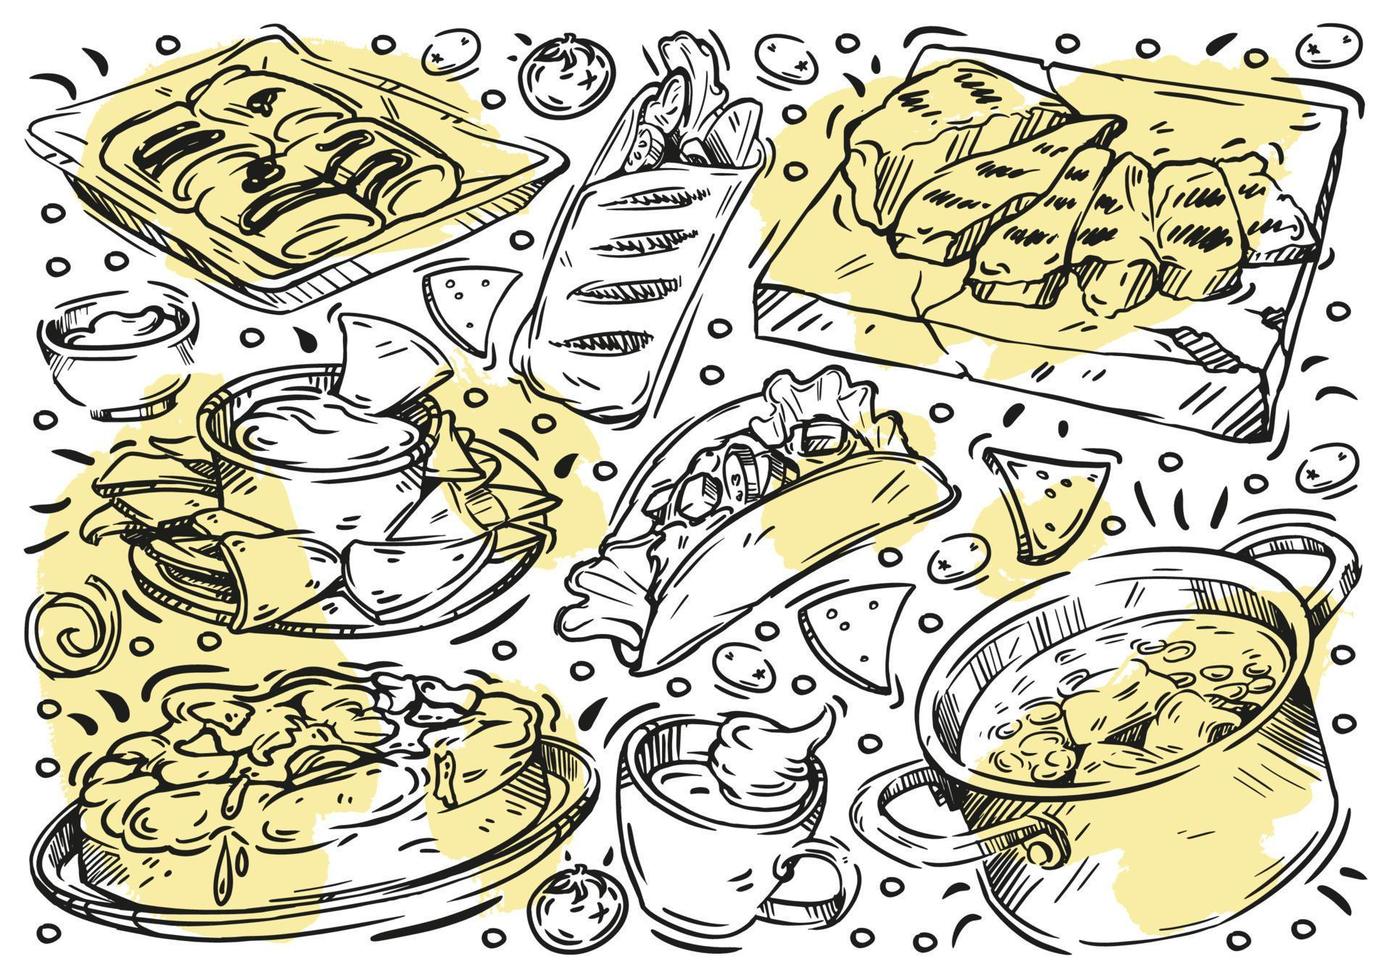 comida de ilustração vetorial de linha desenhada à mão. doodle cozinha mexicana, carne grelhada, bolo clássico tres leches, pico de gallo, taco, burrito, salsa, nachos, café, molho, panquecas, shawarma, ensopado de legumes vetor